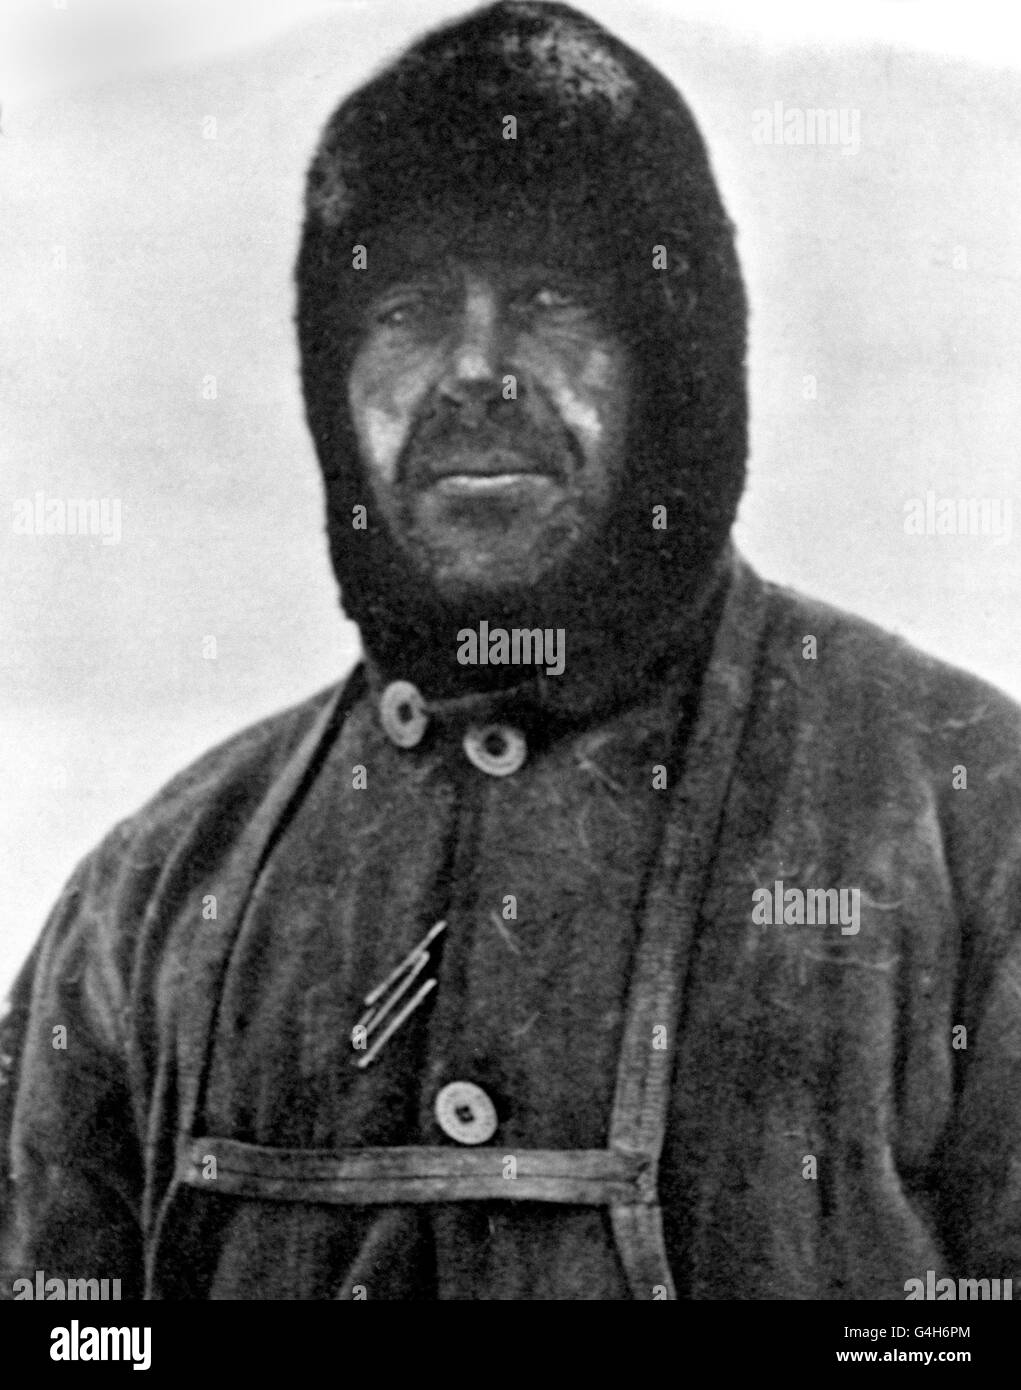 Capitaine Robert Falcon Scott, chef de l'expédition malheureuse Terra Nova au pôle Sud. Scott a dirigé un groupe de cinq personnes qui a atteint le pôle Sud le 17 janvier 1912, pour découvrir qu'elles avaient été précédées par l'expédition norvégienne de Roald Amundsen. Lors de leur voyage de retour, Scott et ses quatre camarades ont tous péri. Banque D'Images